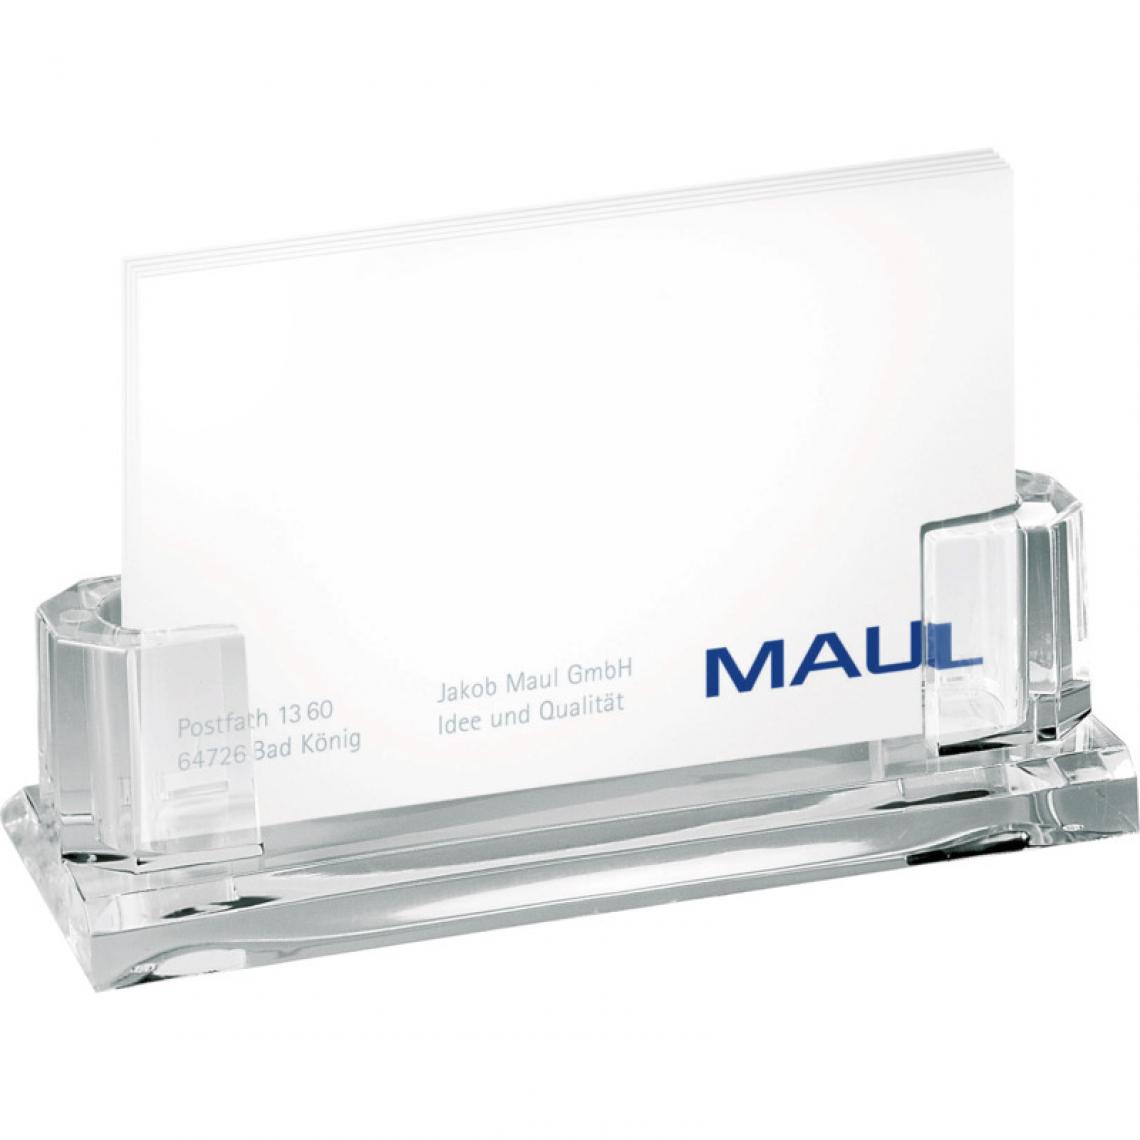 Maul - MAUL Porte-cartes de visite acrylique pour env. 35 cartes () - Accessoires Bureau